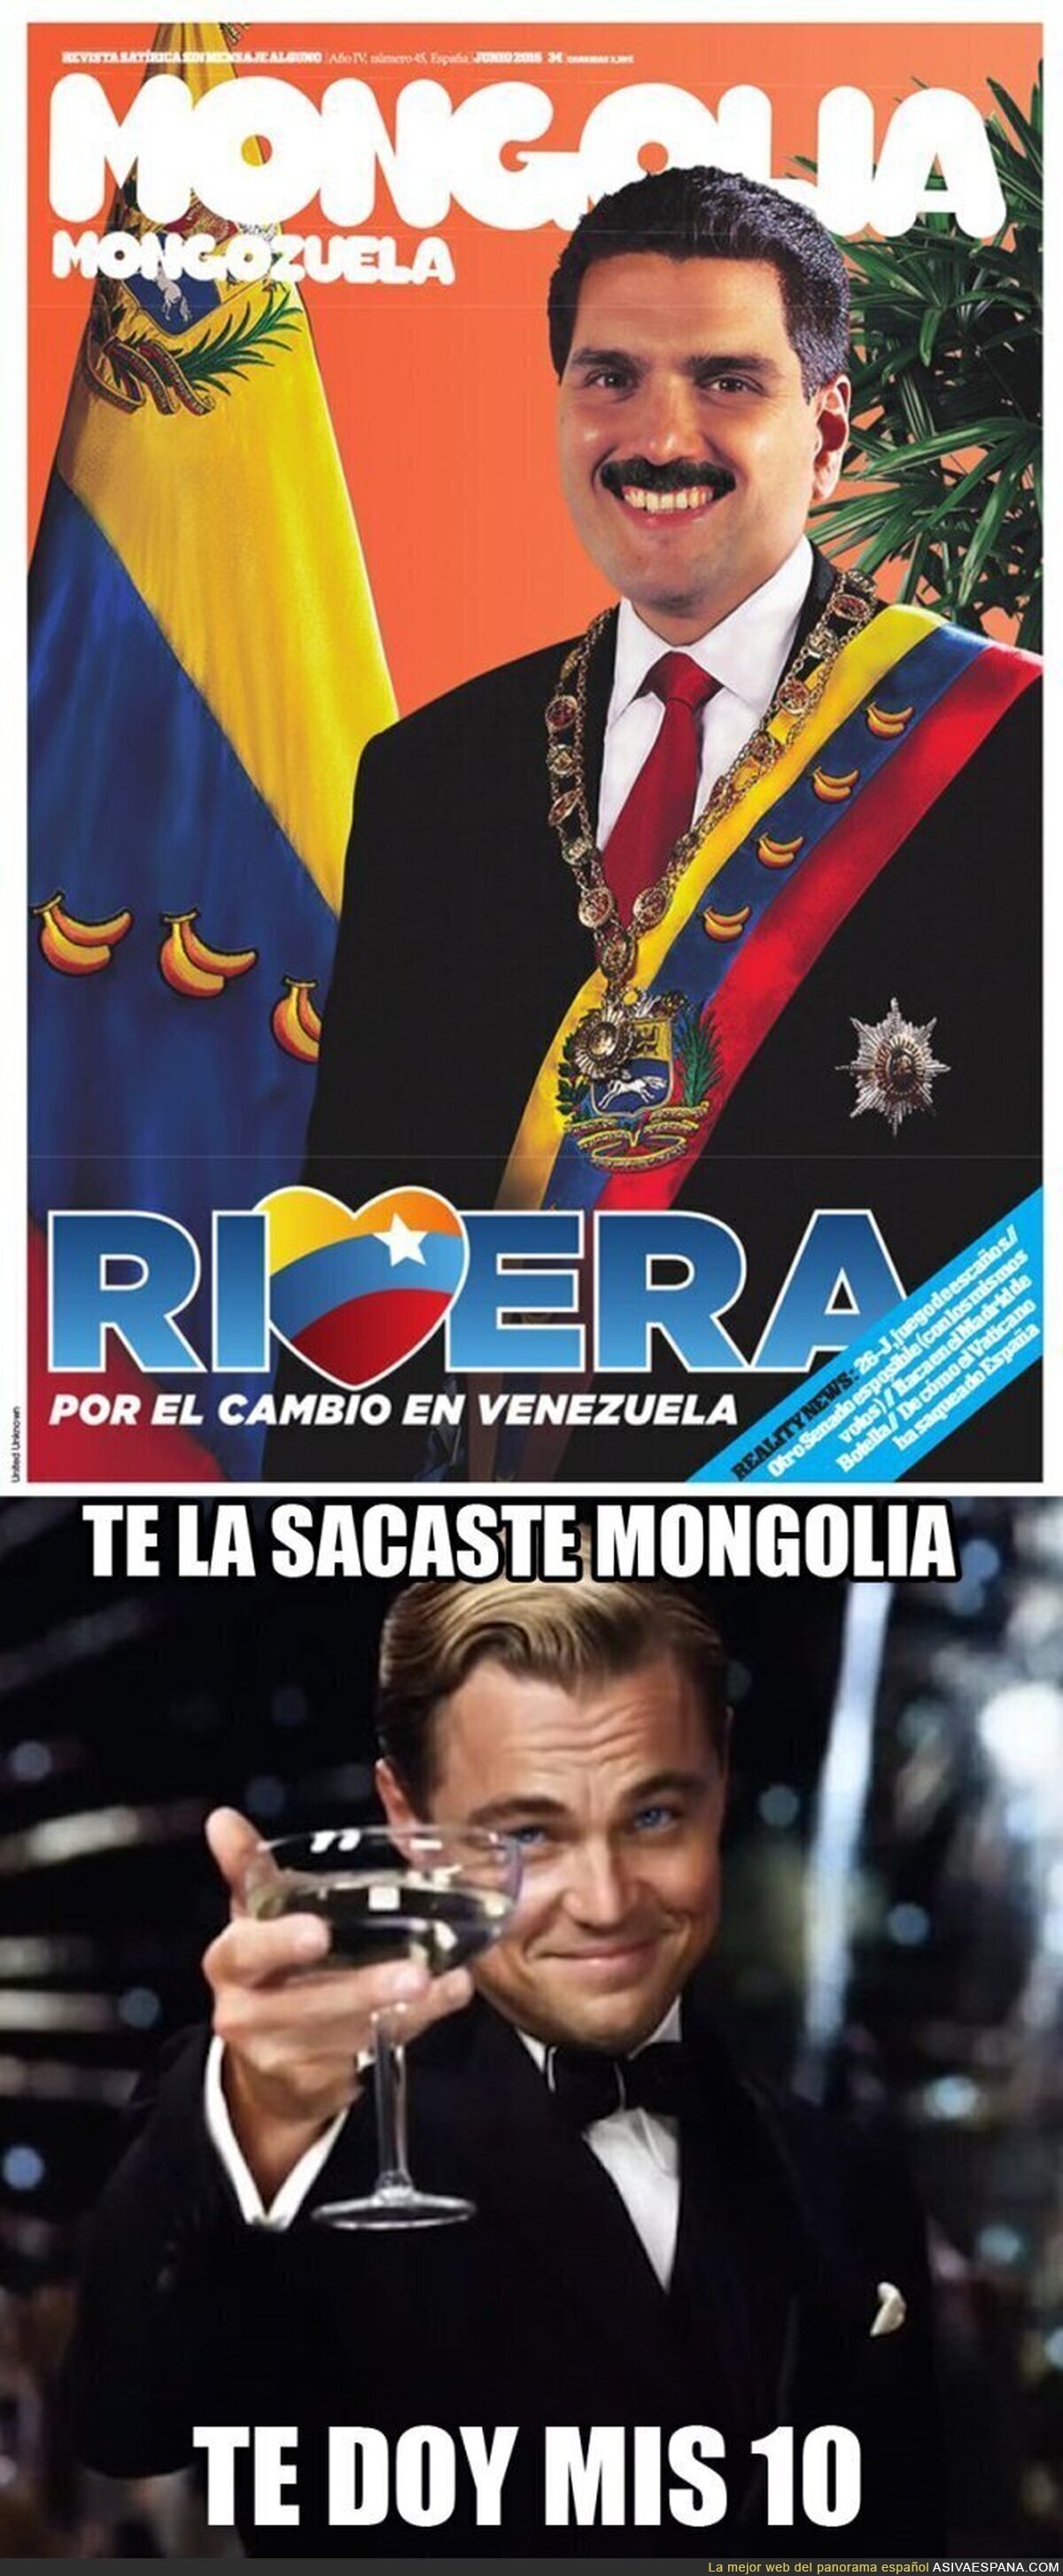 La portada de Mongolia de este Junio con Rivera y Venezuela de protagonistas